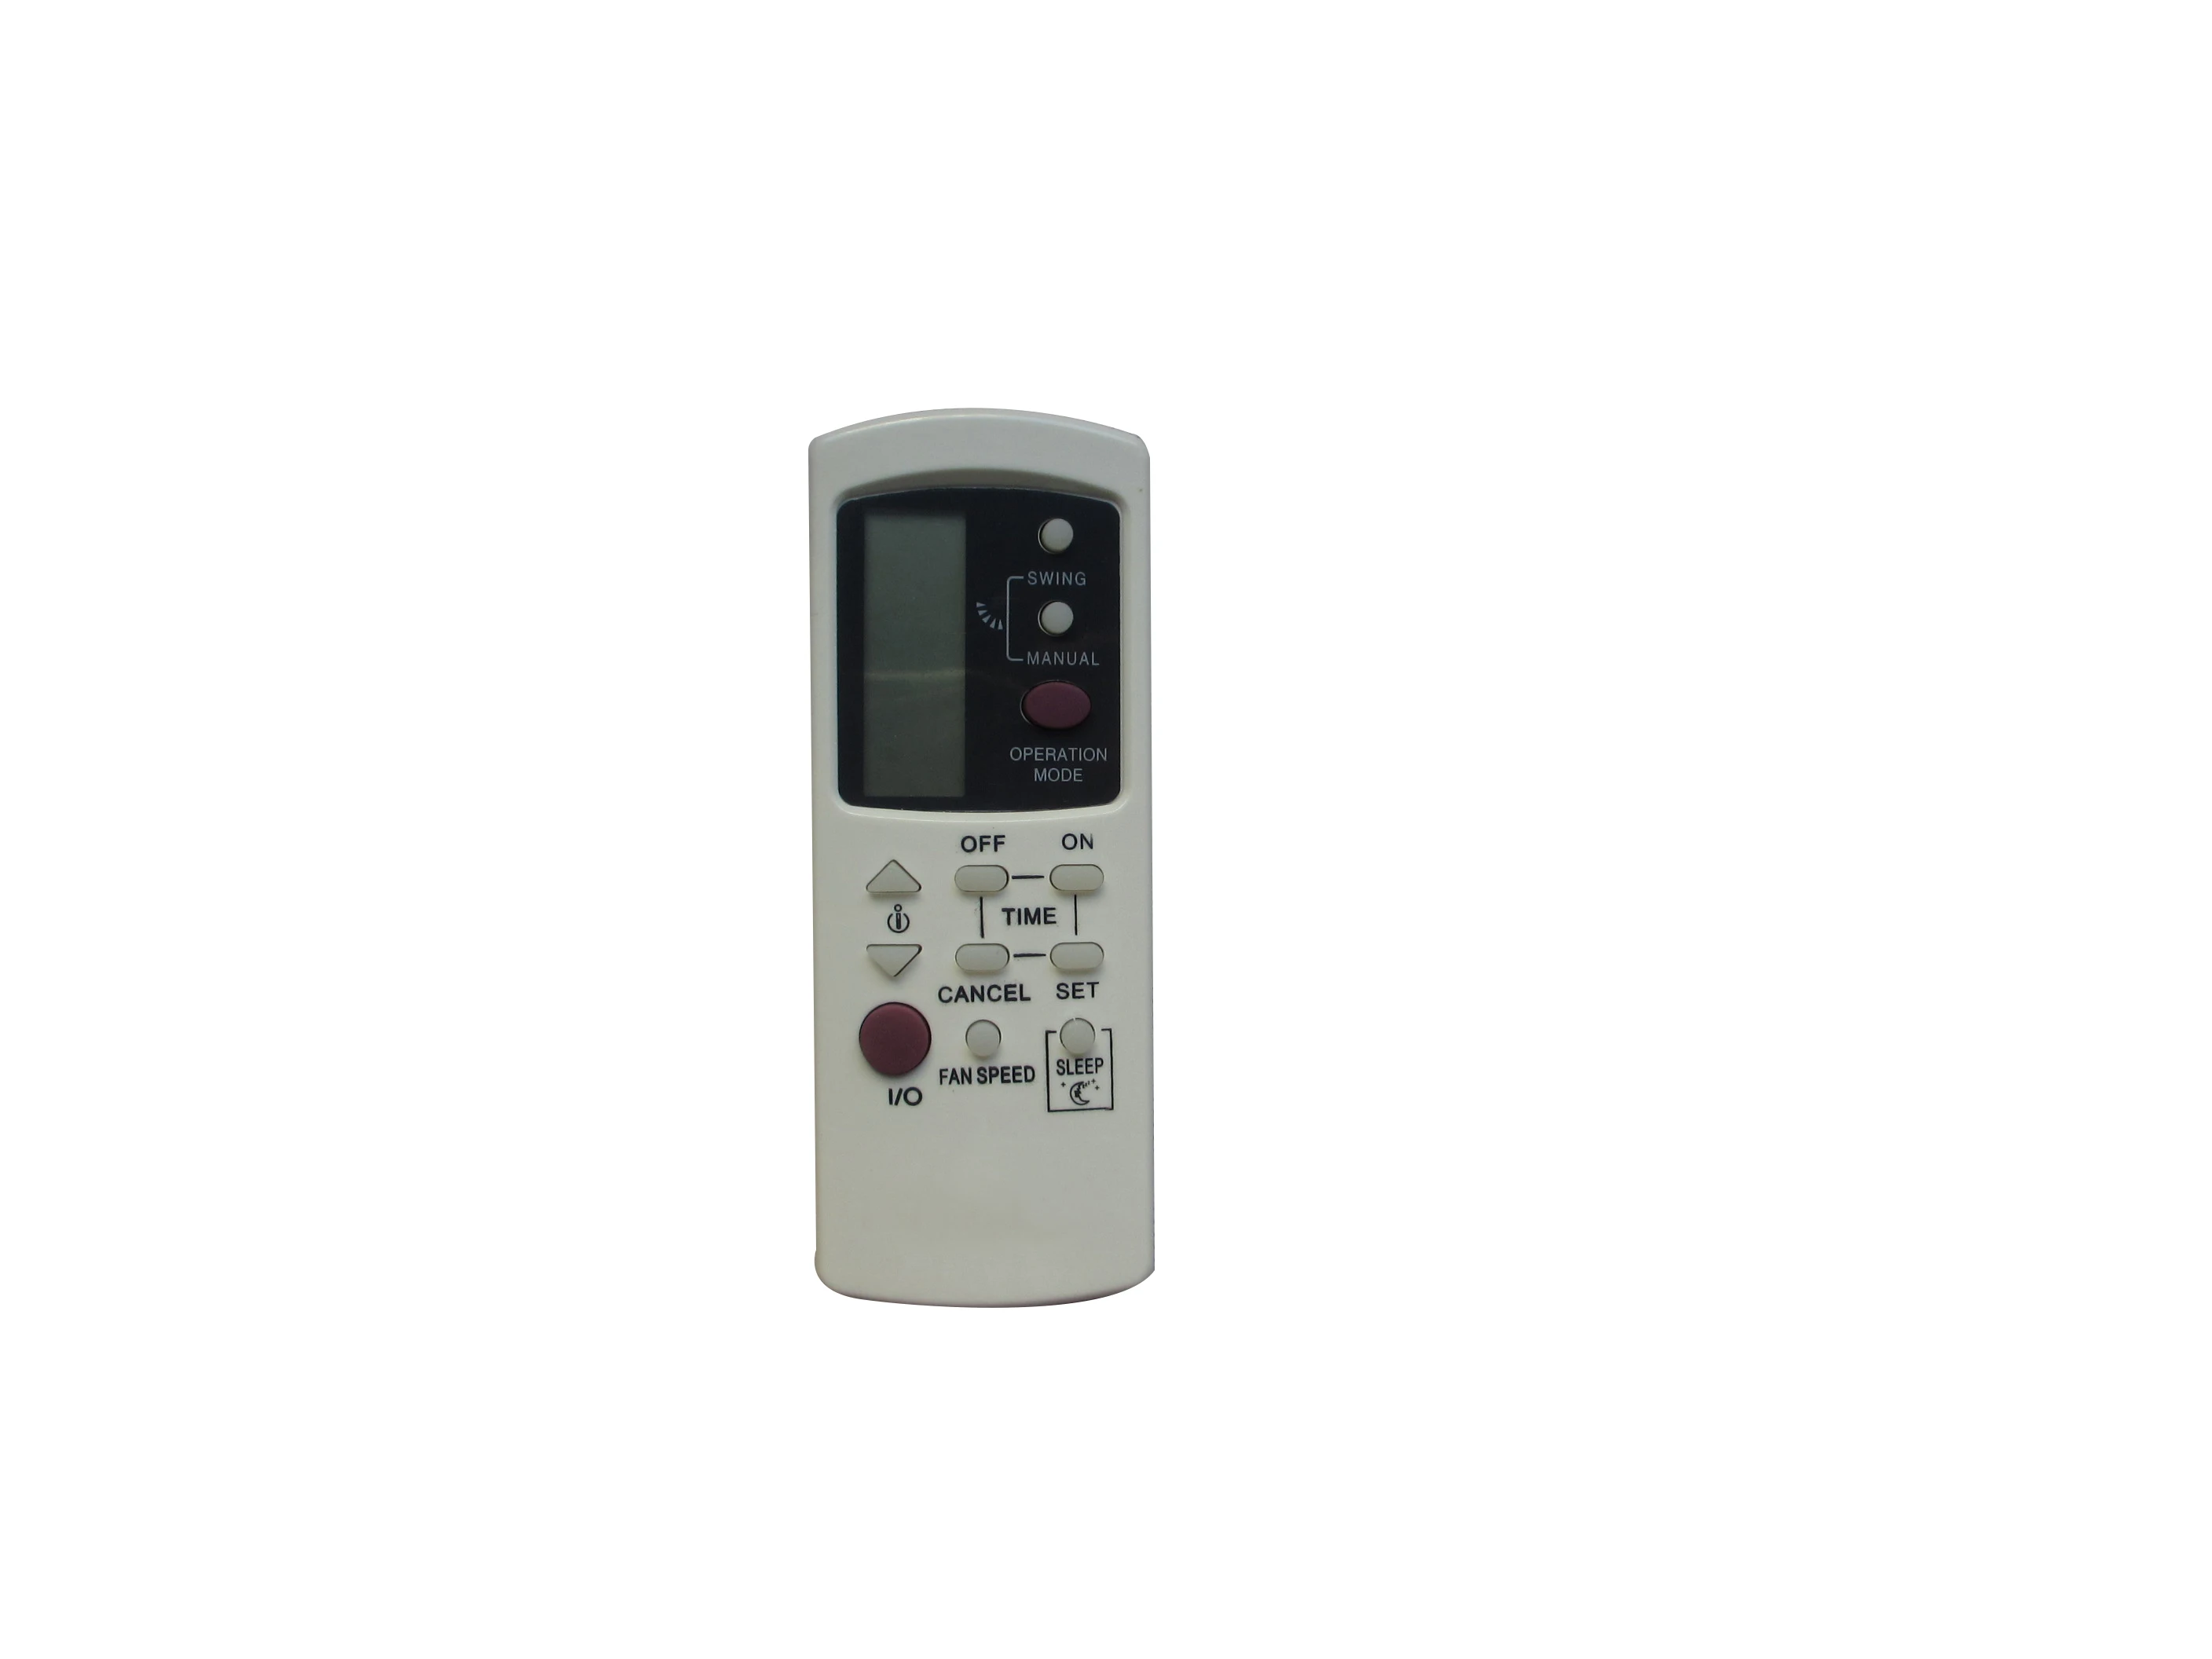 

Remote Control For Galanz GZ-1002B-E1 GZ-1002B-E3 GZ-1002B GZ01-BEJ0-000 GZ-50B GZ-1002A-E3 GZ-50GB GZ-31B Air Conditioner